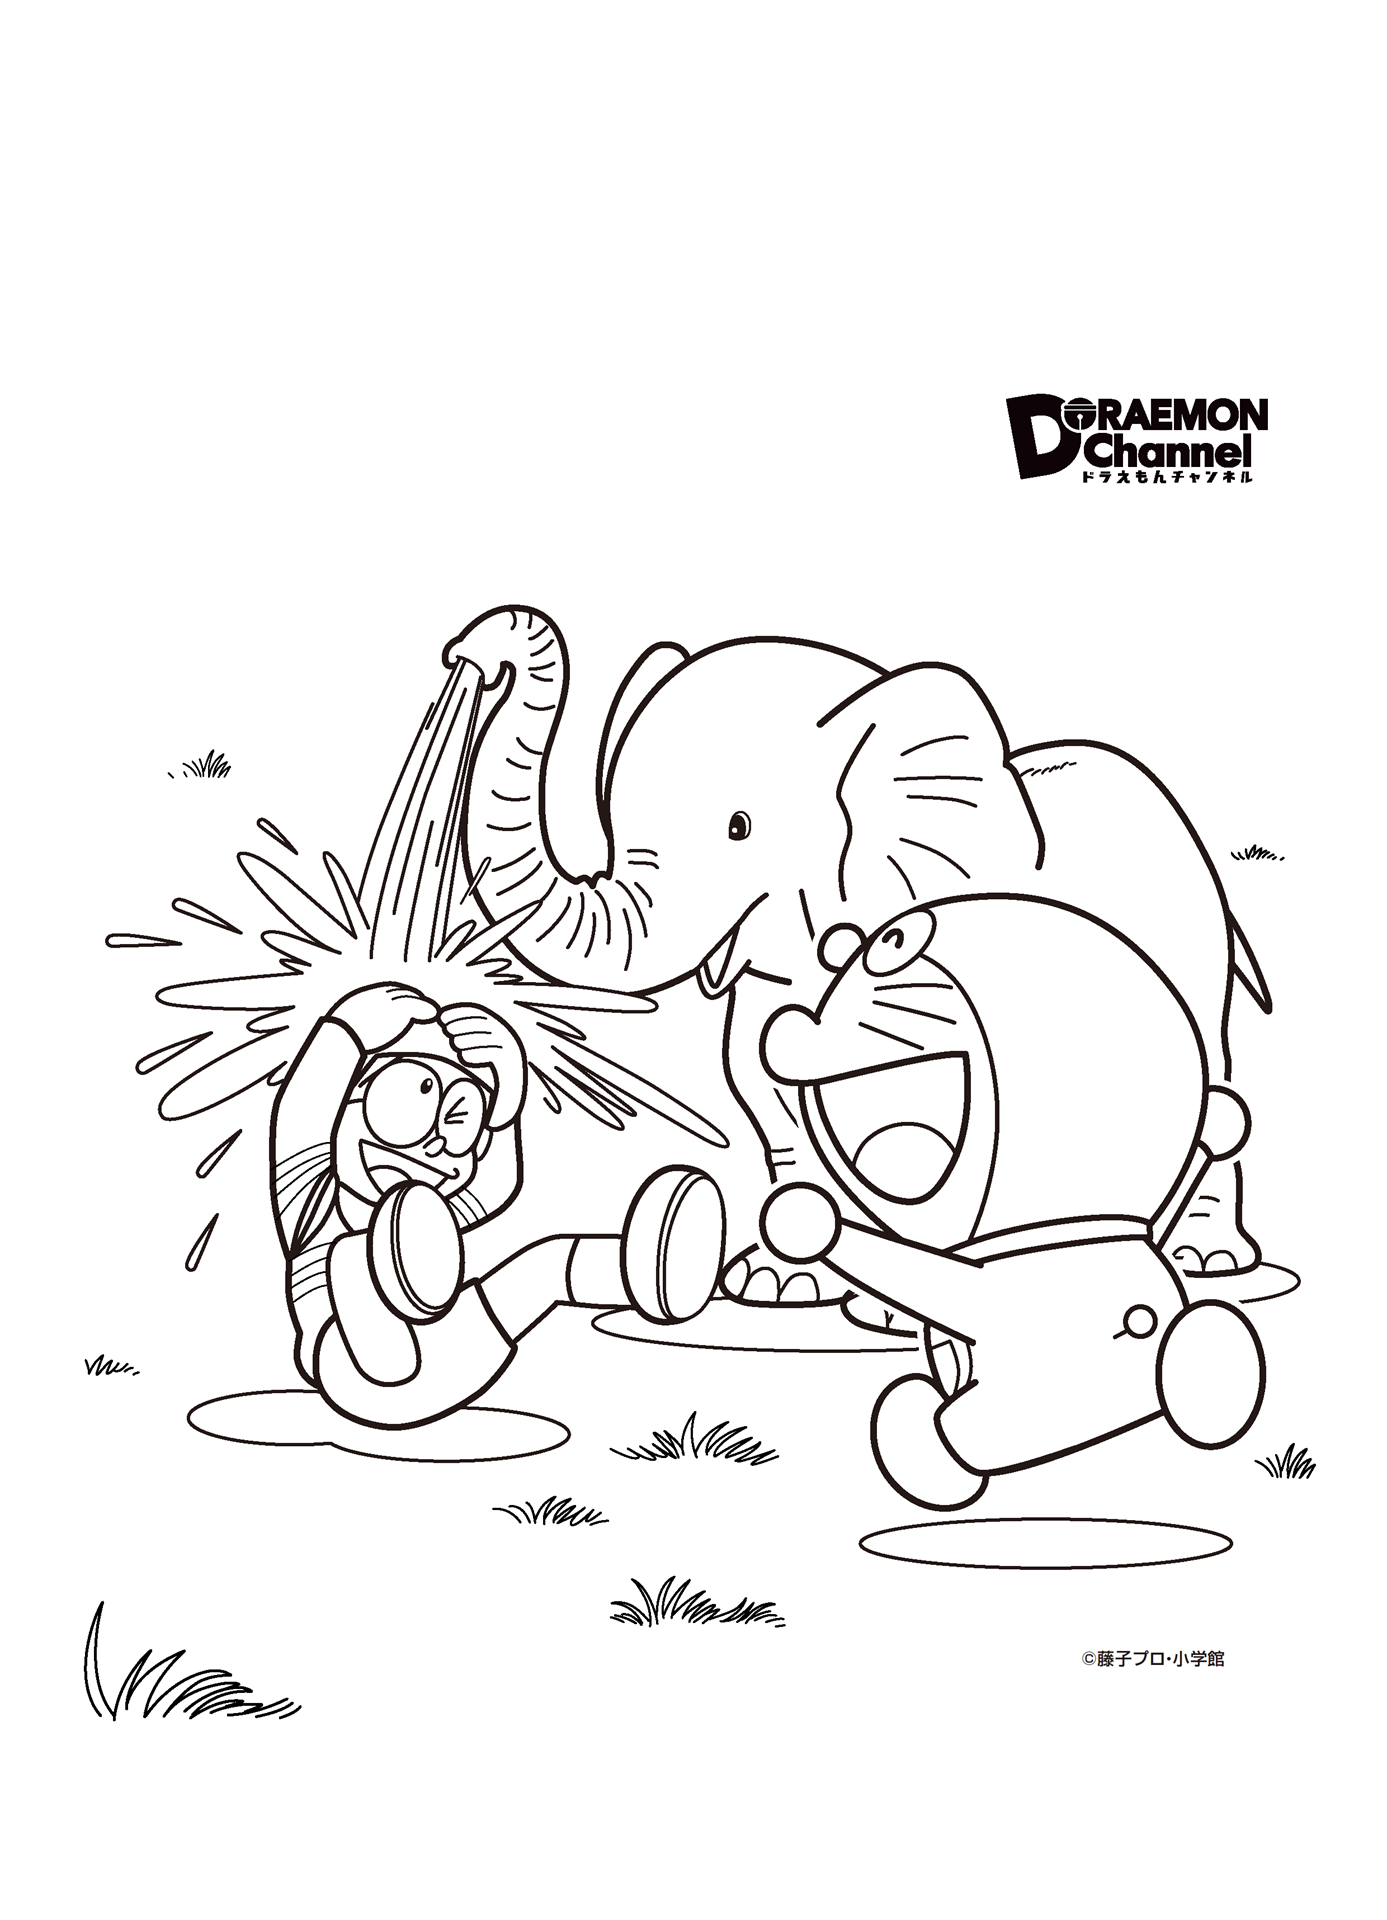 Tranh tô màu Nobita, Doremon và chú voi con tinh nghịch